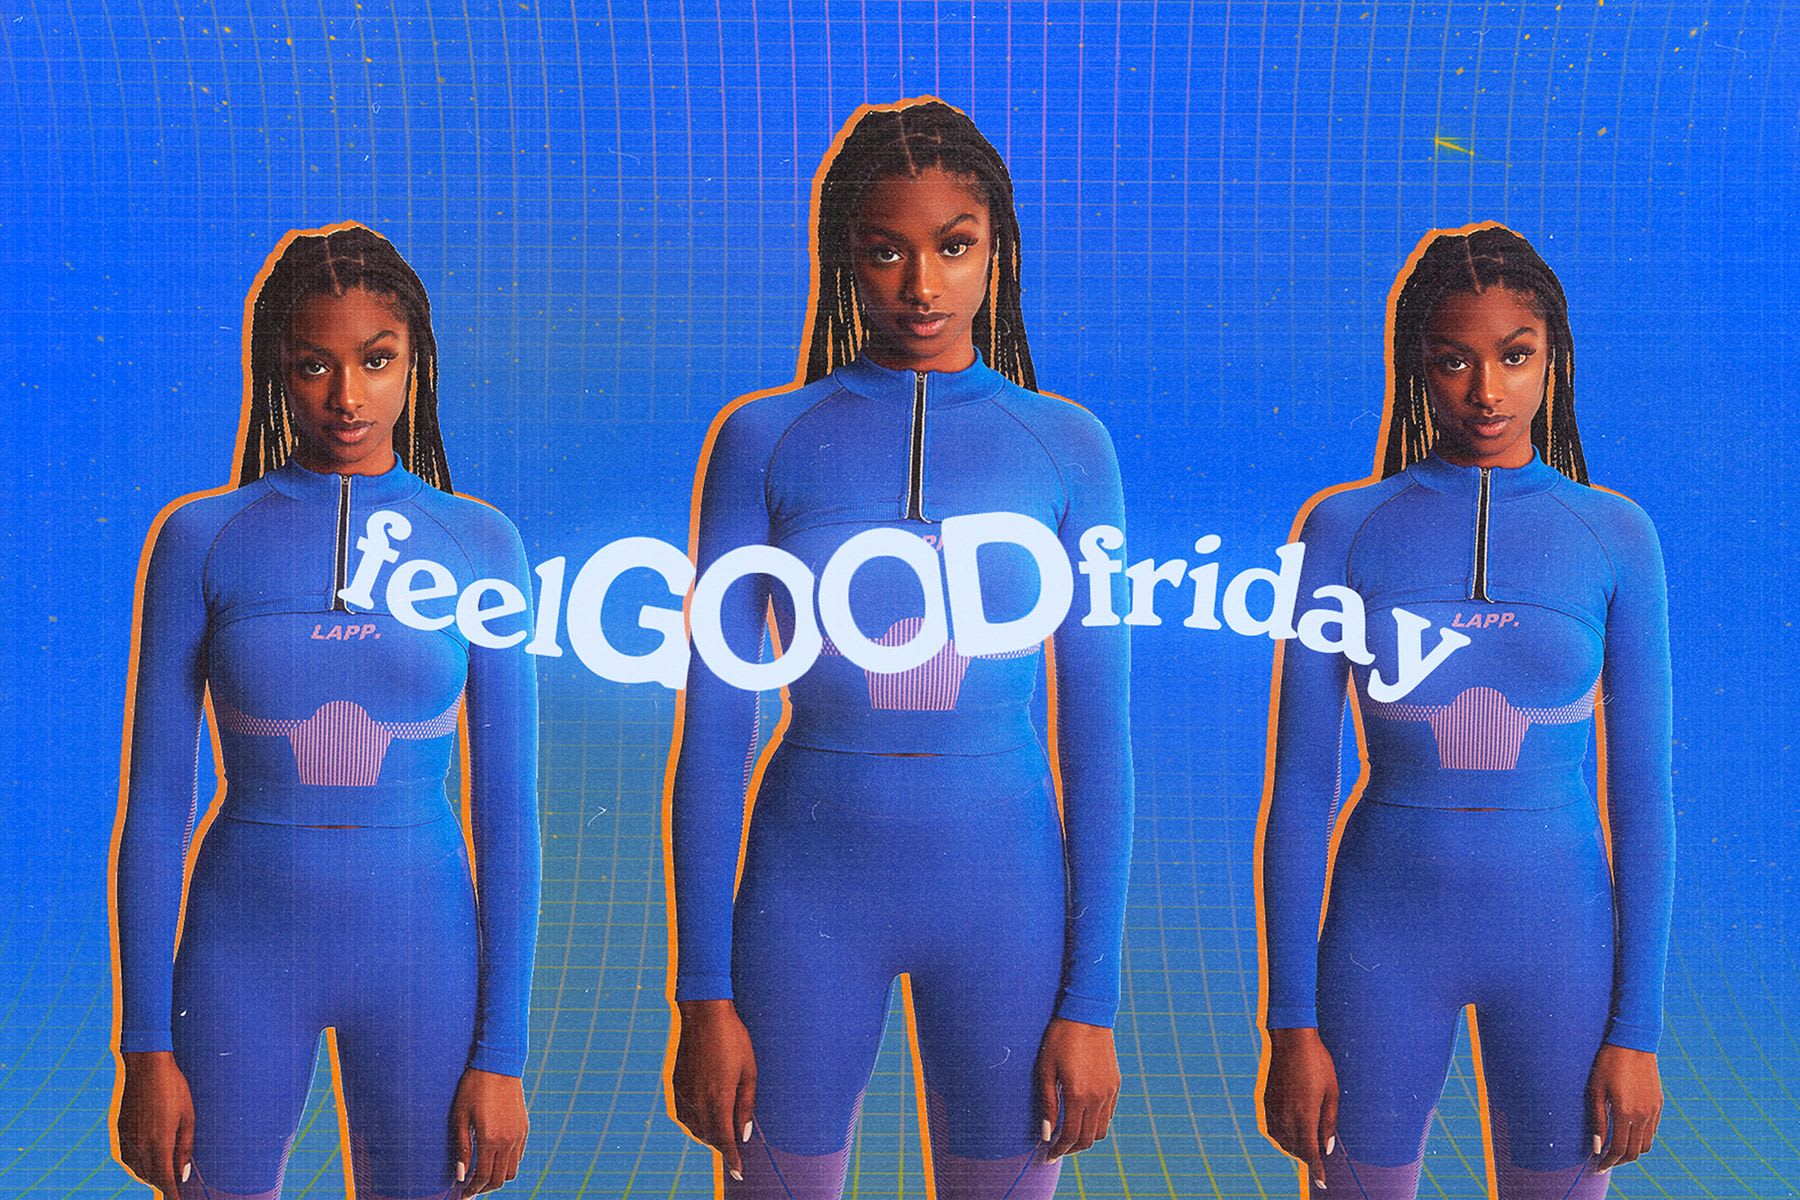 Introducing: Feel Good Friday